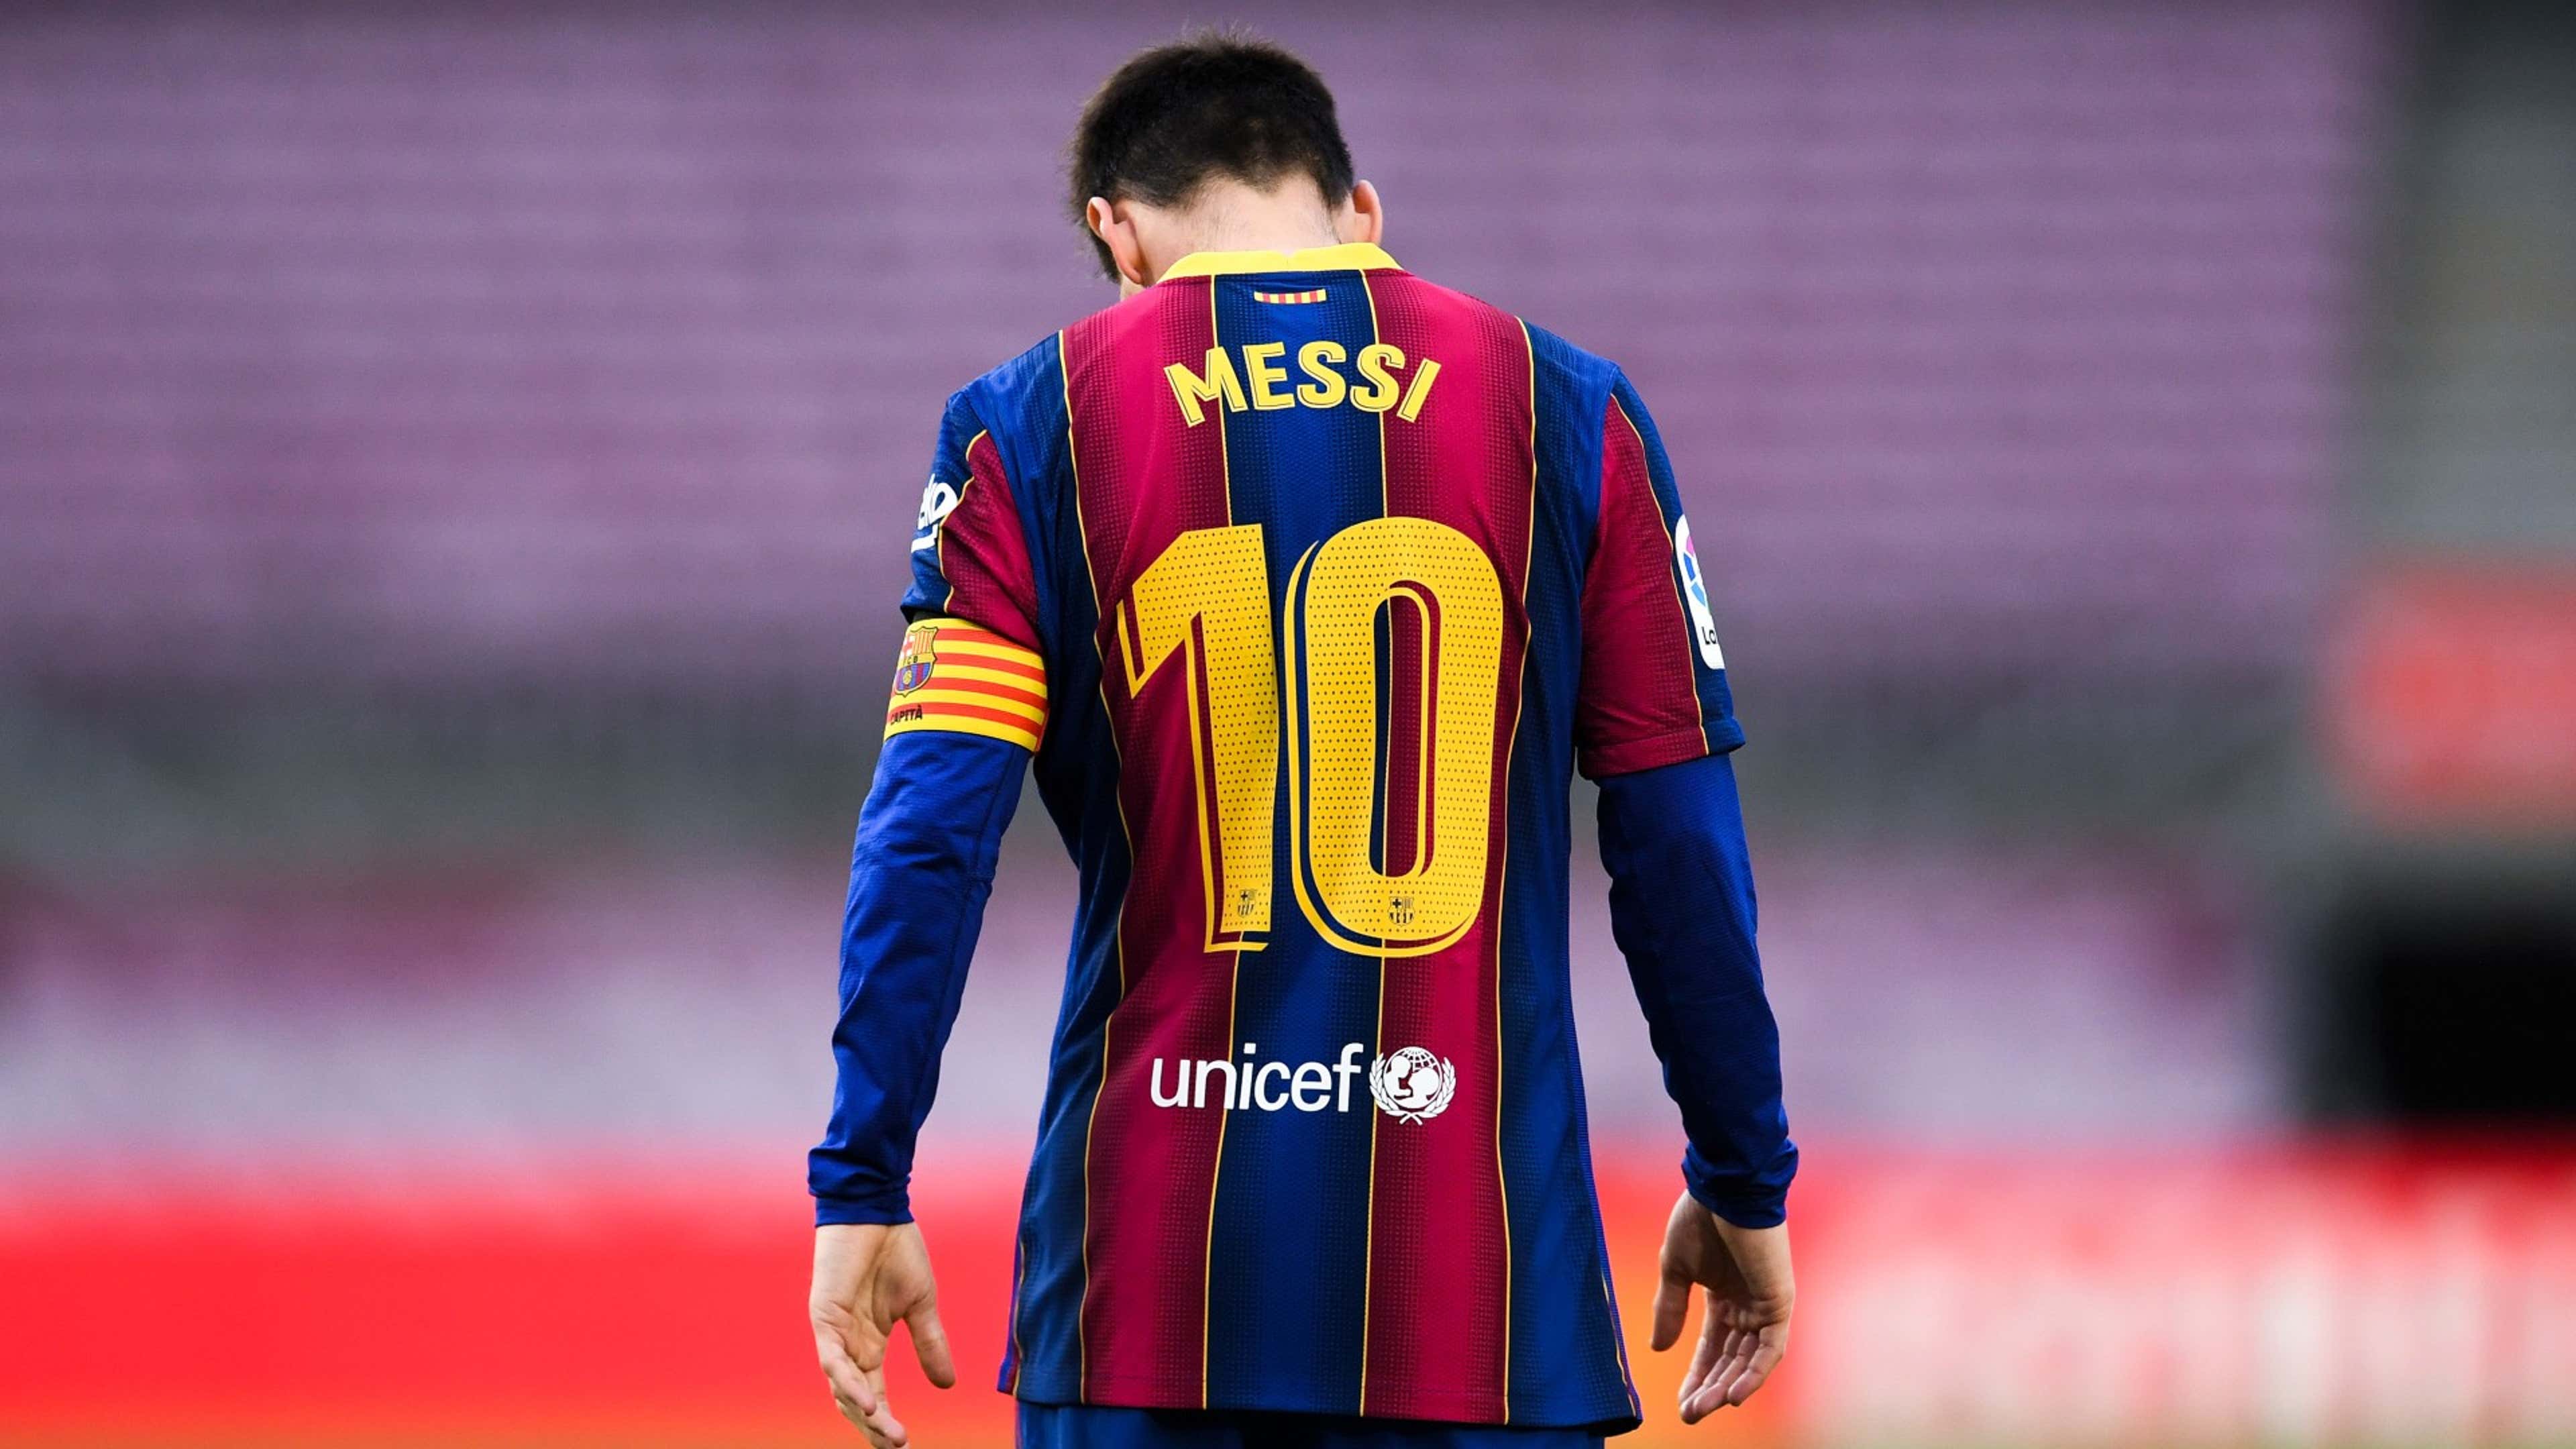 سبب زيارة ليونيل ميسي إلى برشلونة لن يُعجب جمهور النادي الكتالوني! | مصر  Goal.com